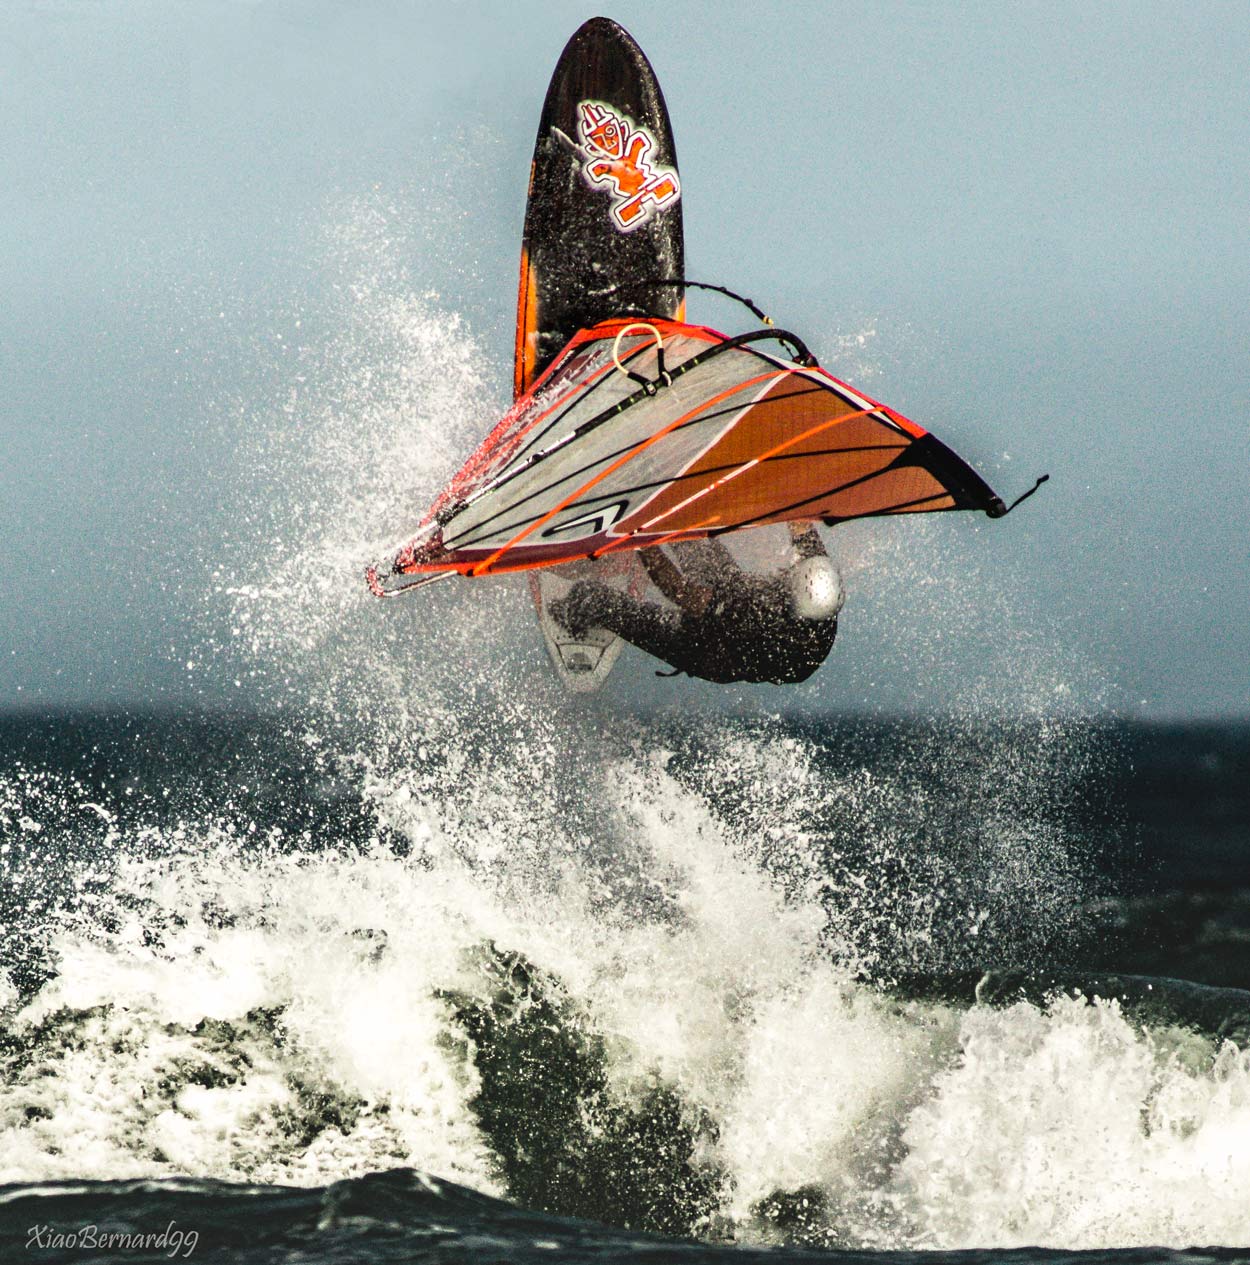 A figure of Windsurf as a take off 